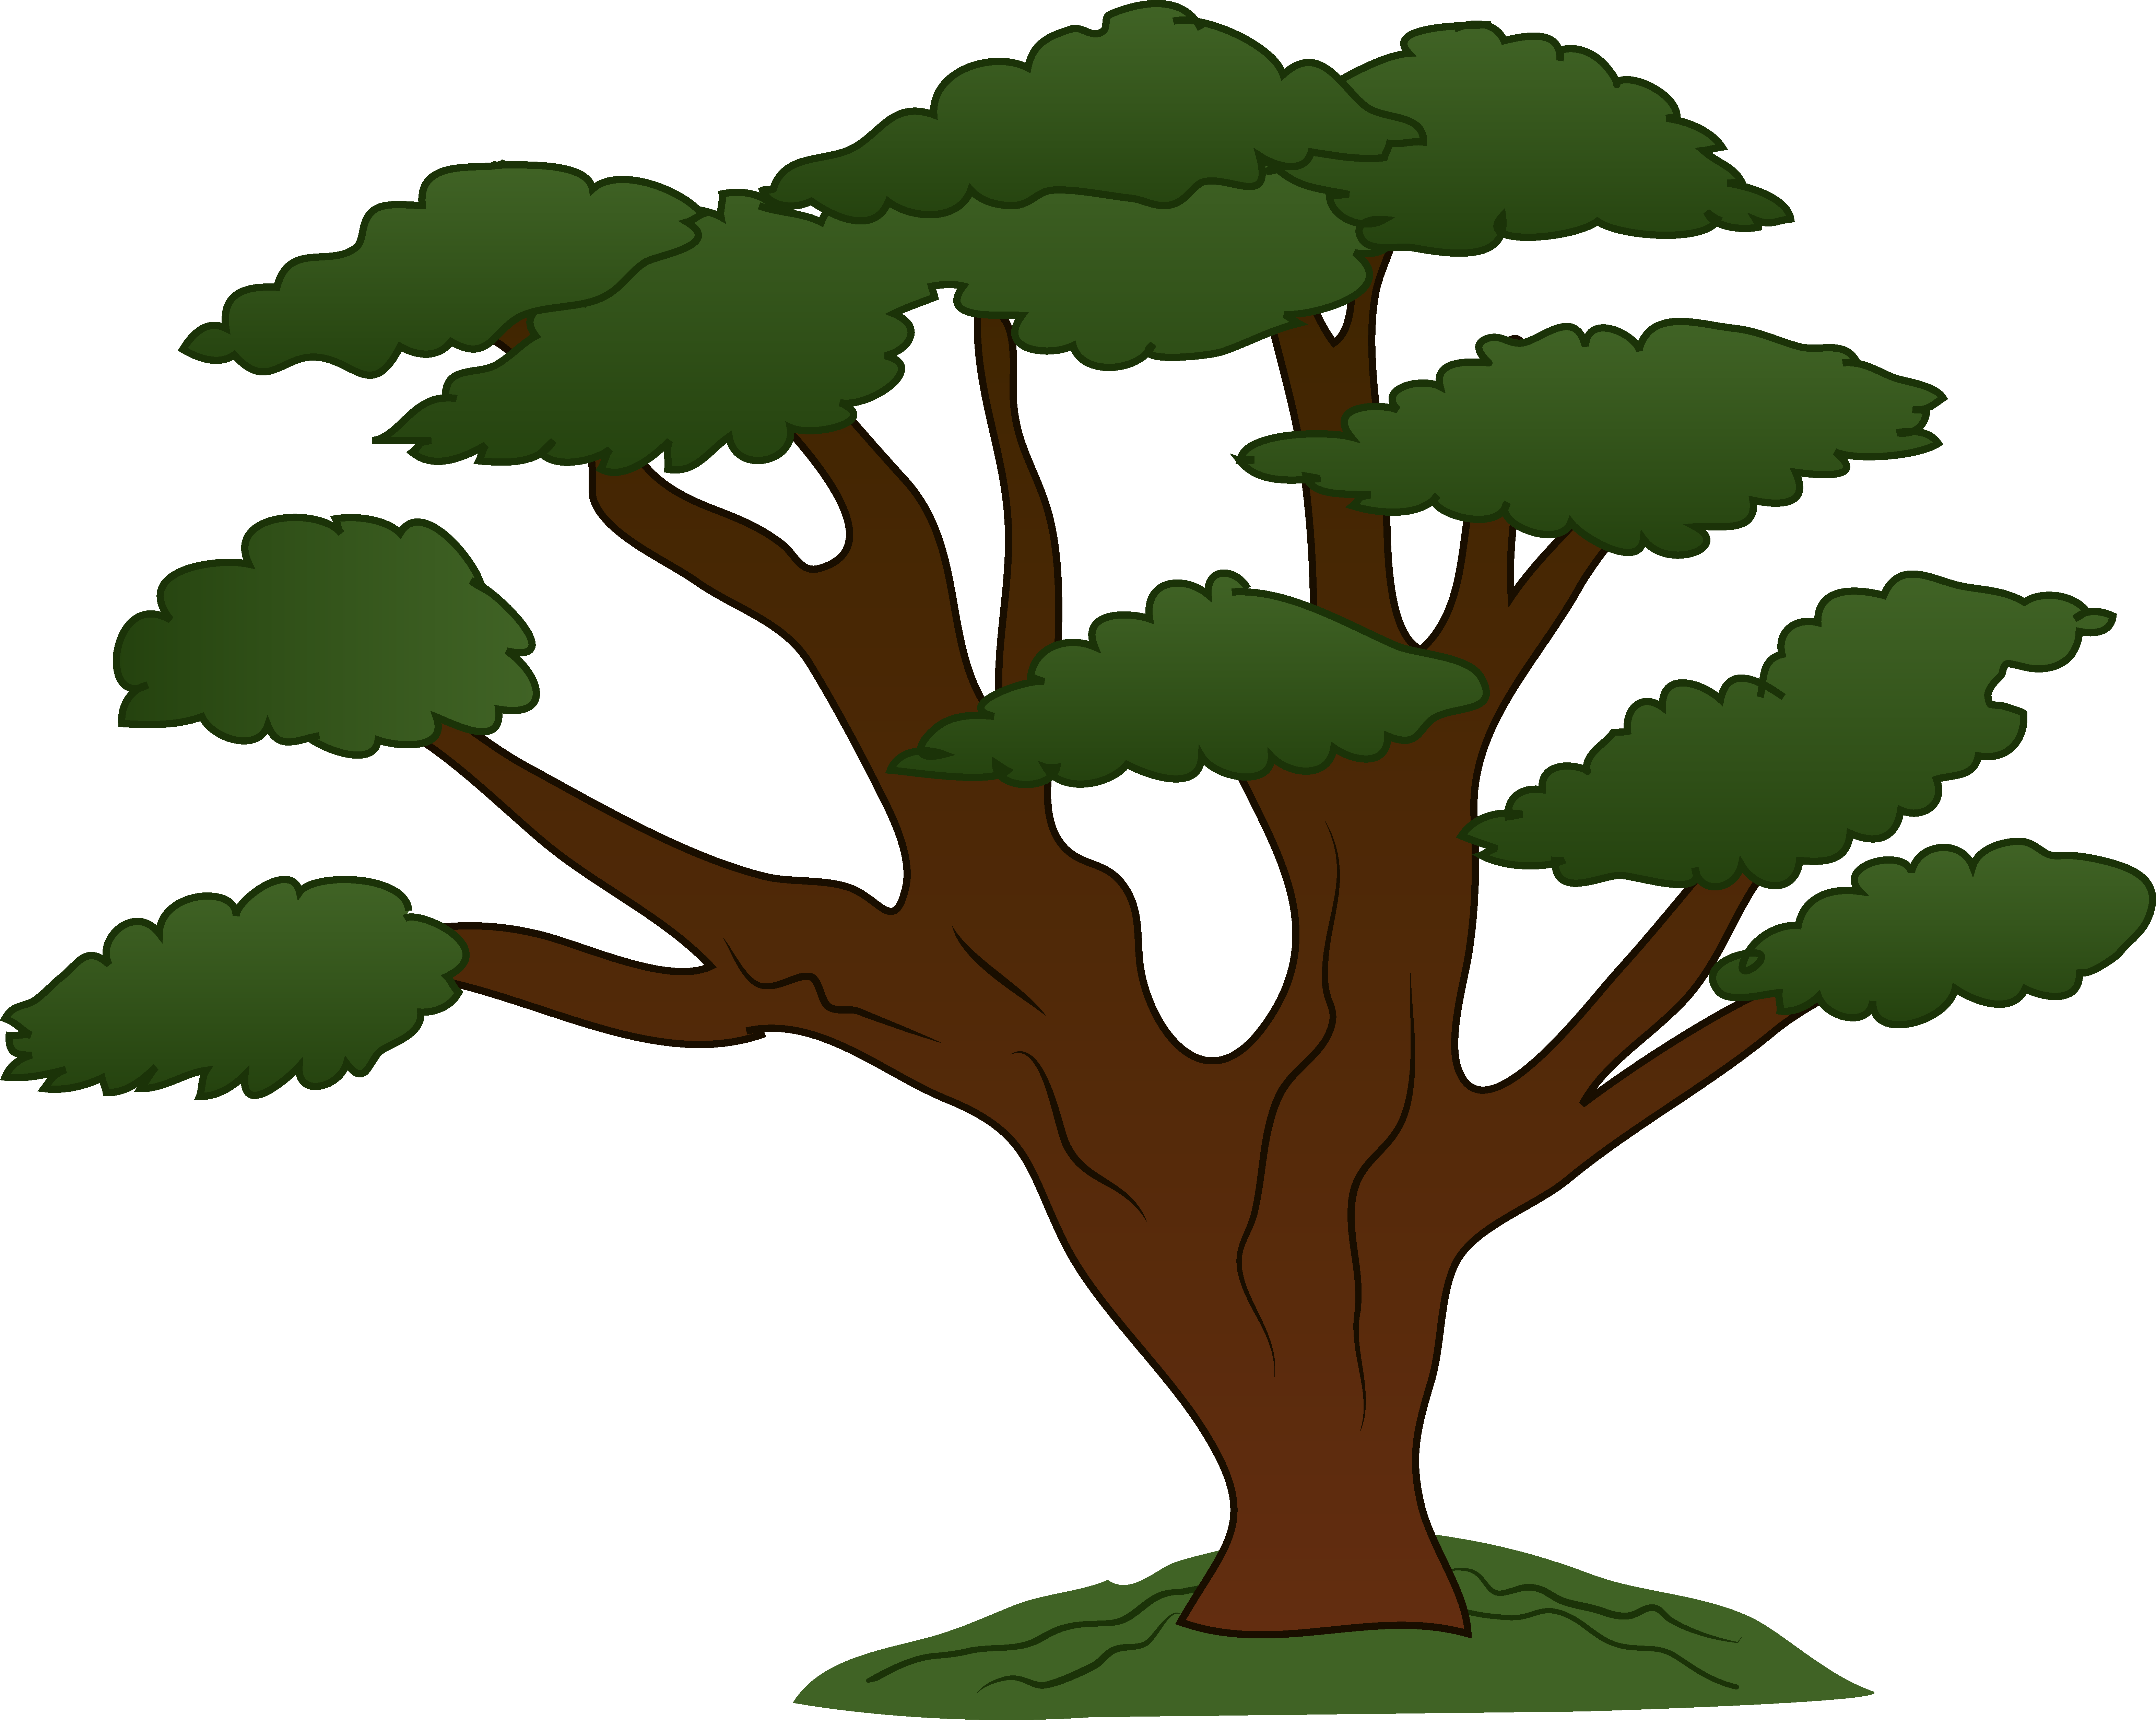 Trees family tree clipart fre - Free Clip Art Trees